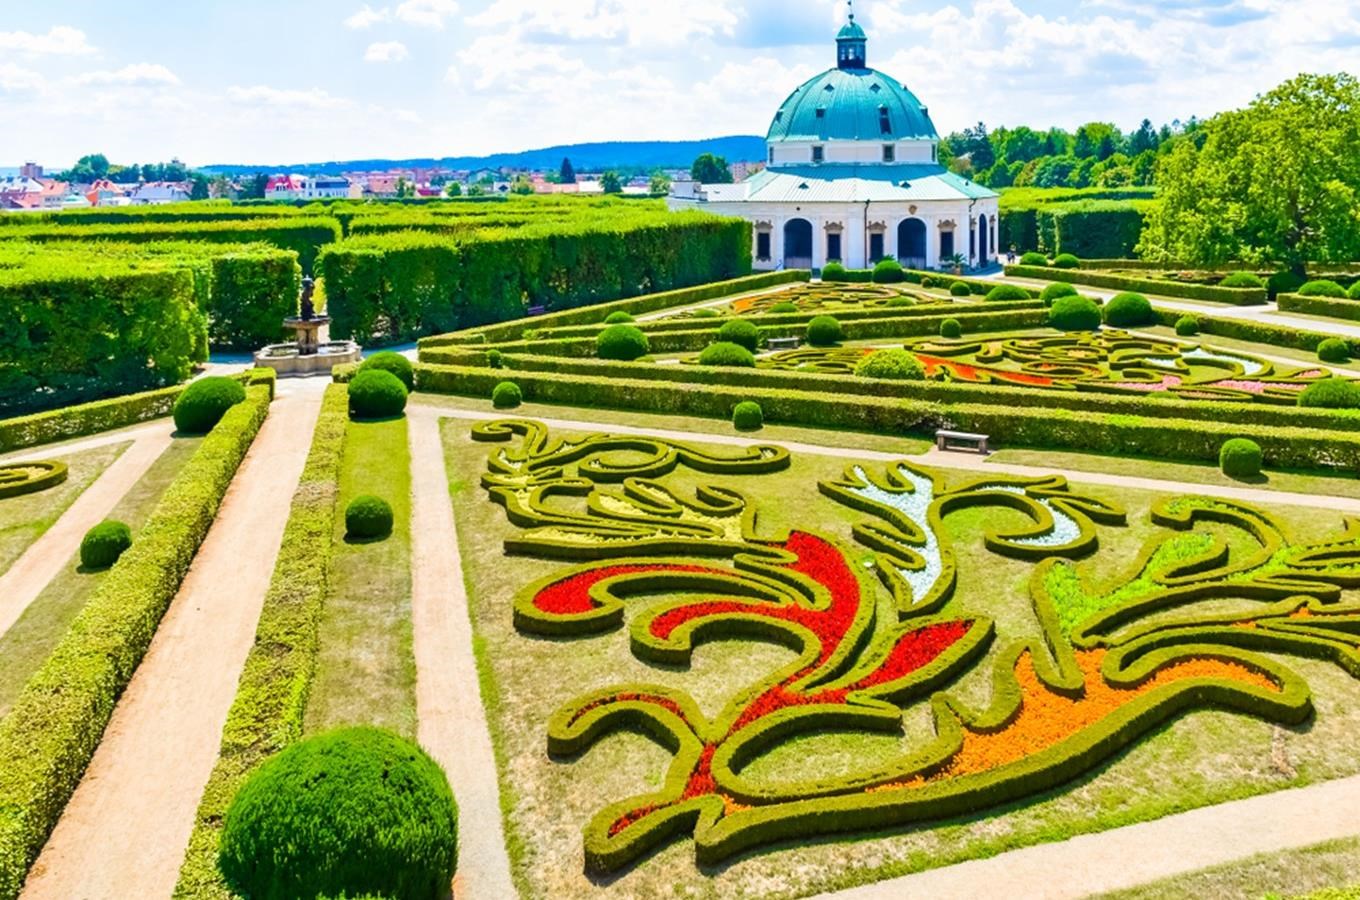 Víkend otevřených zahrad nabídne letos přes dvěstě zajímavých míst v ČR